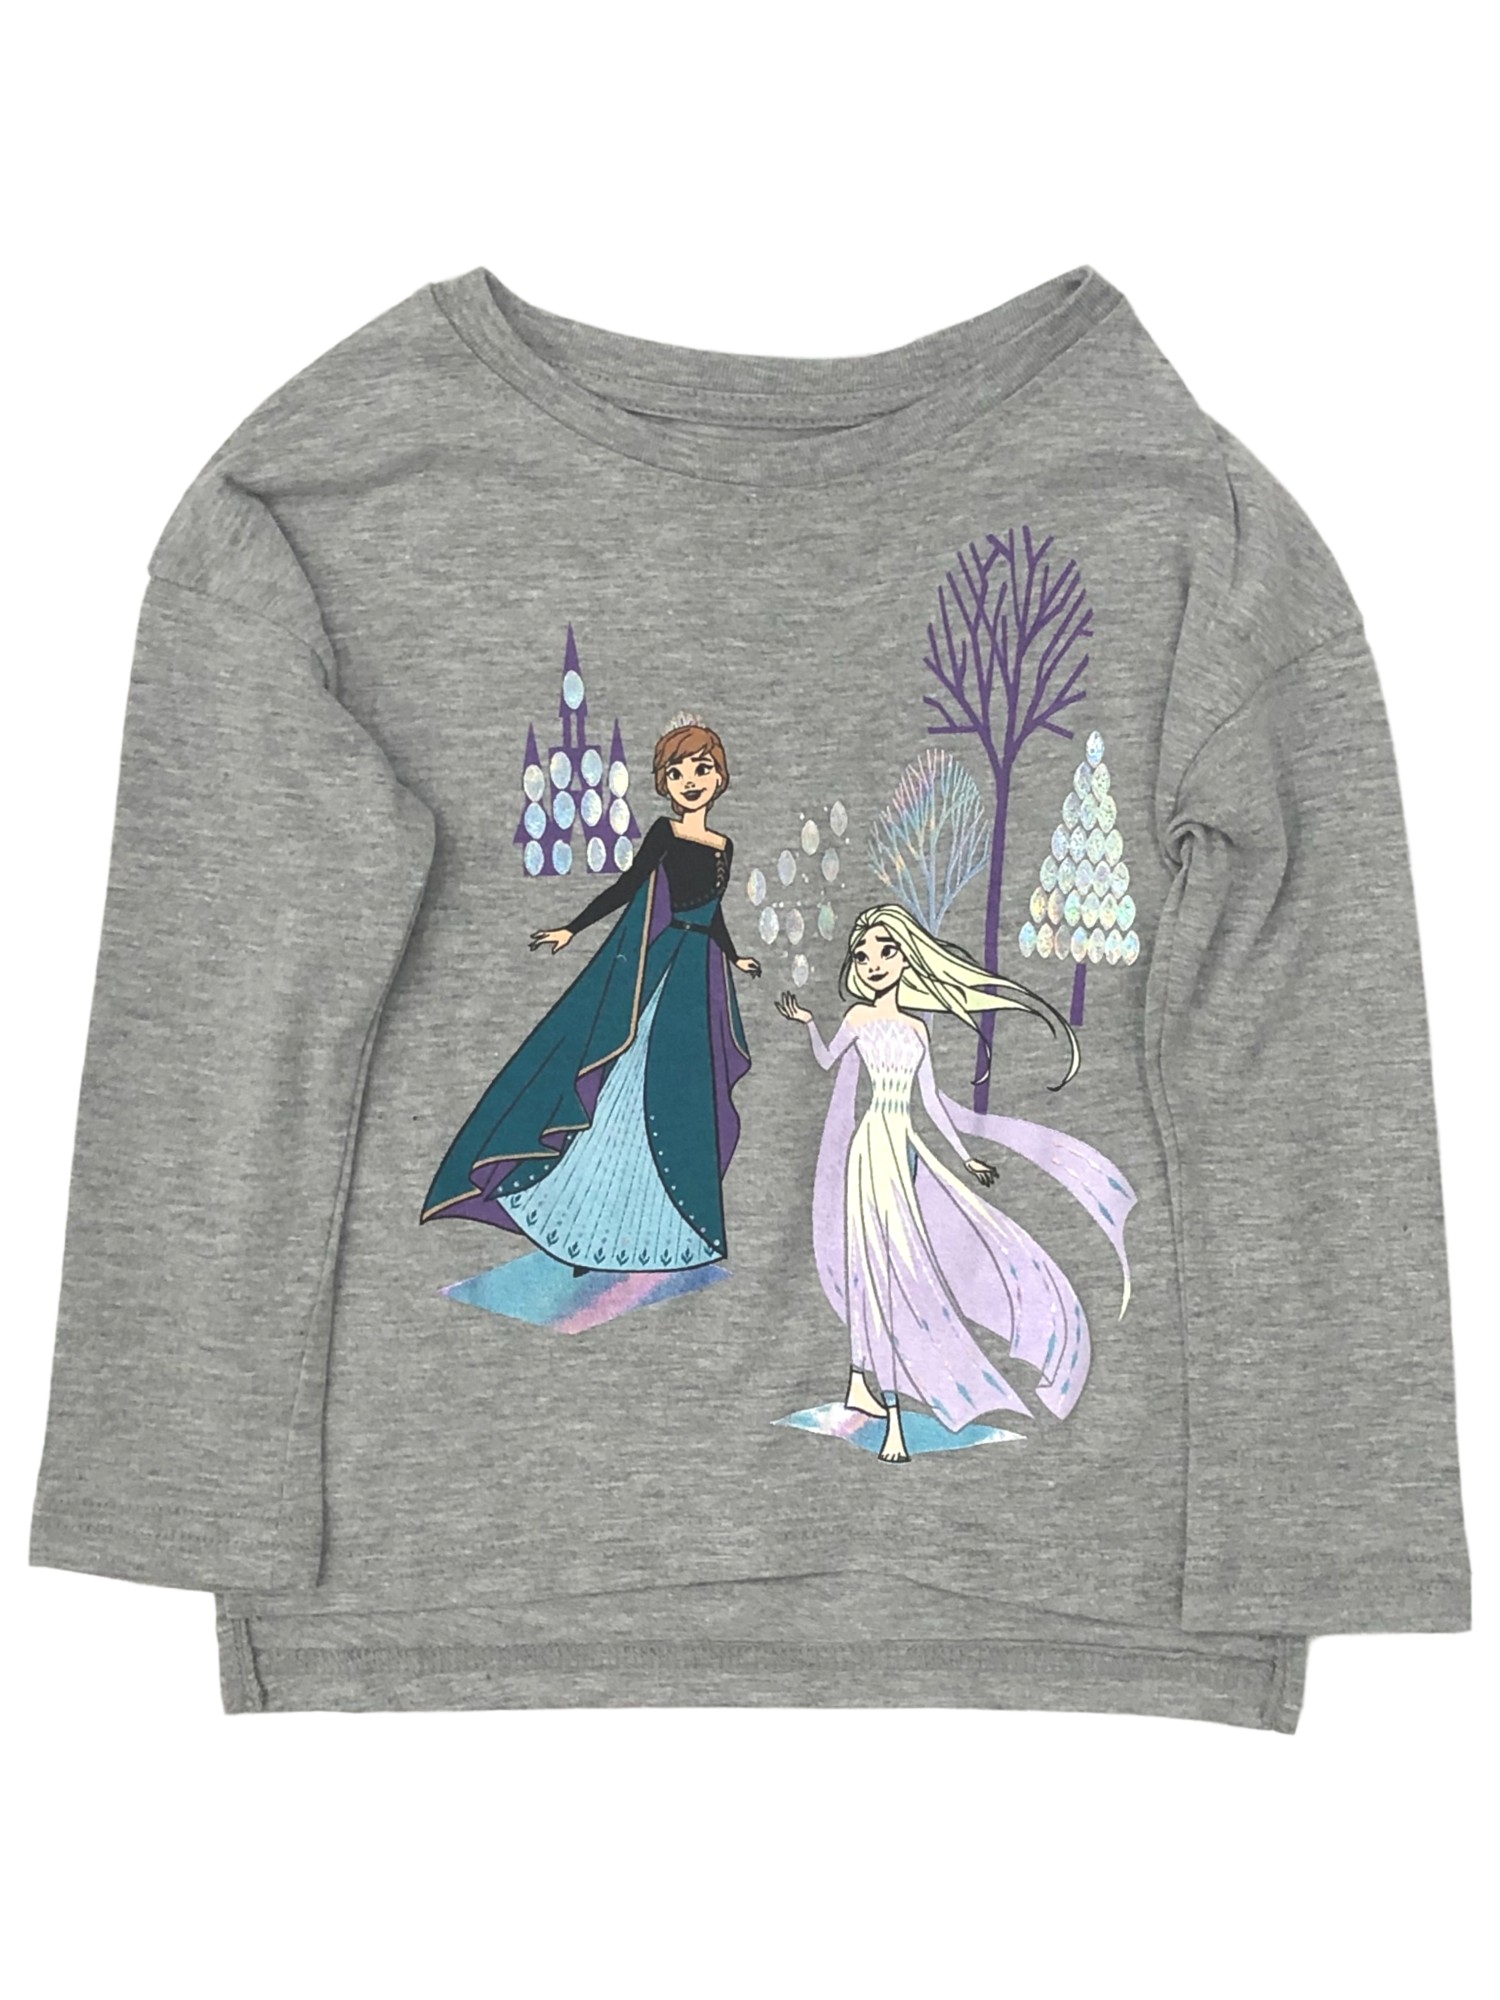 Disney Frozen Toddler Girls Long Sleeve Gray Elsa & Anna T-Shirt Tee Shirt